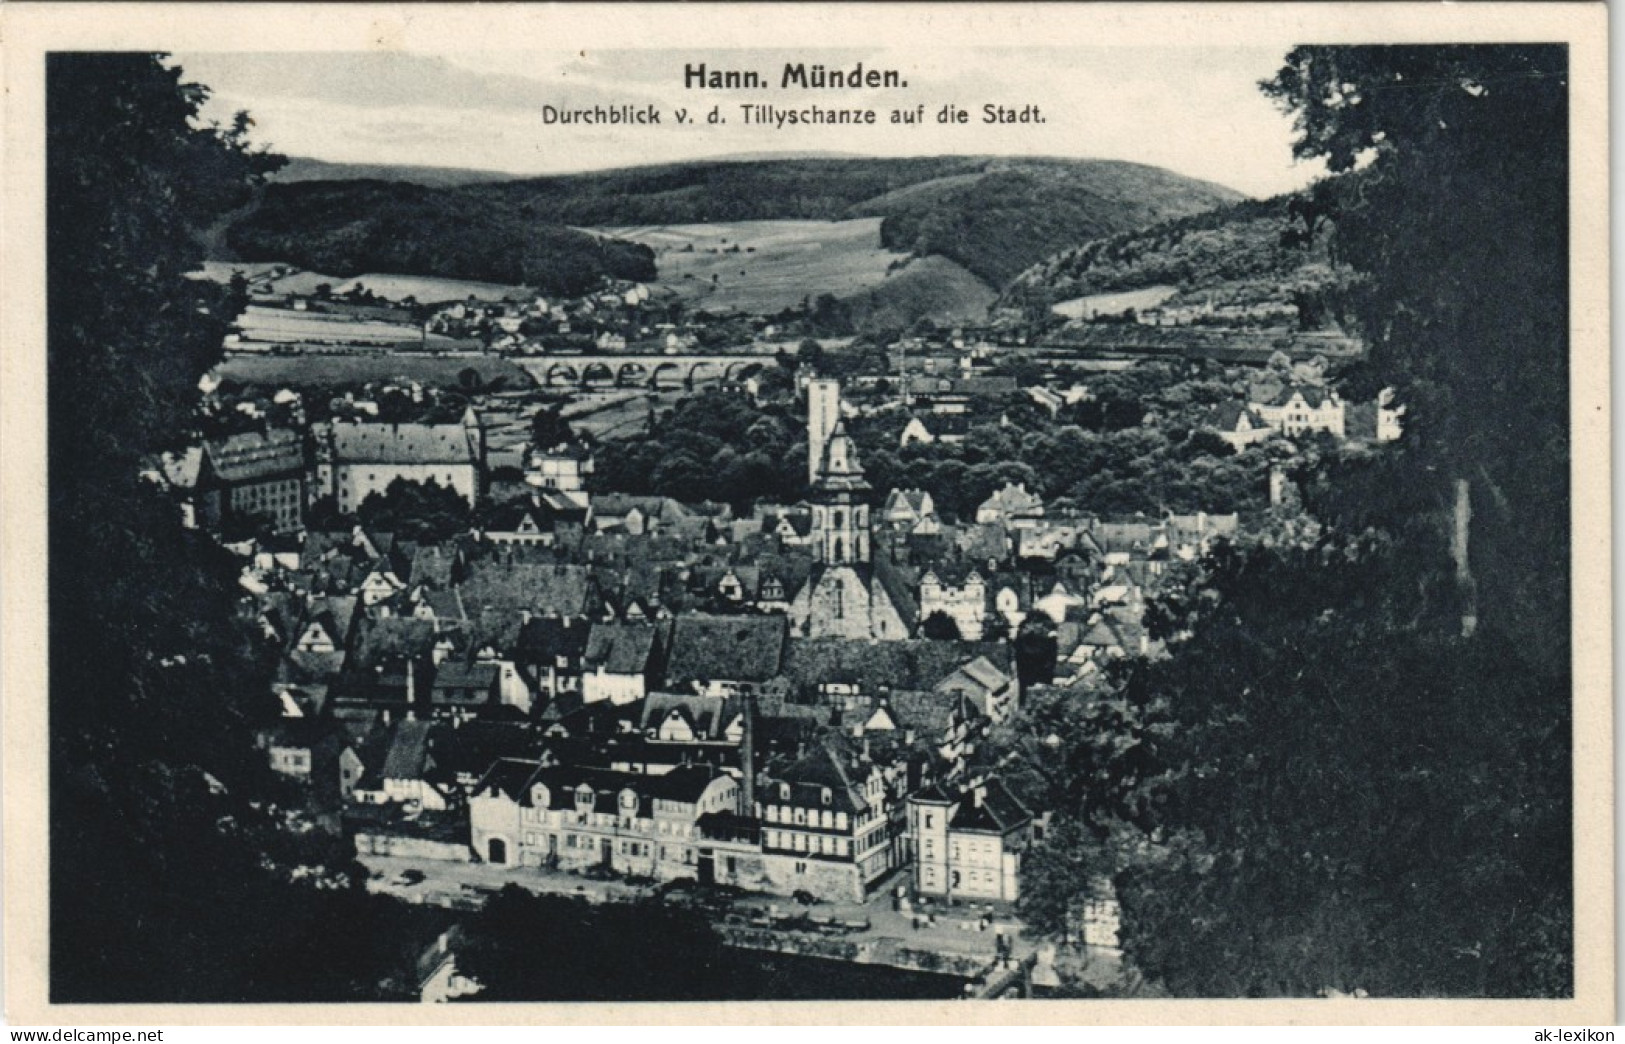 Hannoversch Münden Hann. Münden Durchblick V. D. Tillyschanze Die Stadt. 1925 - Hannoversch Muenden